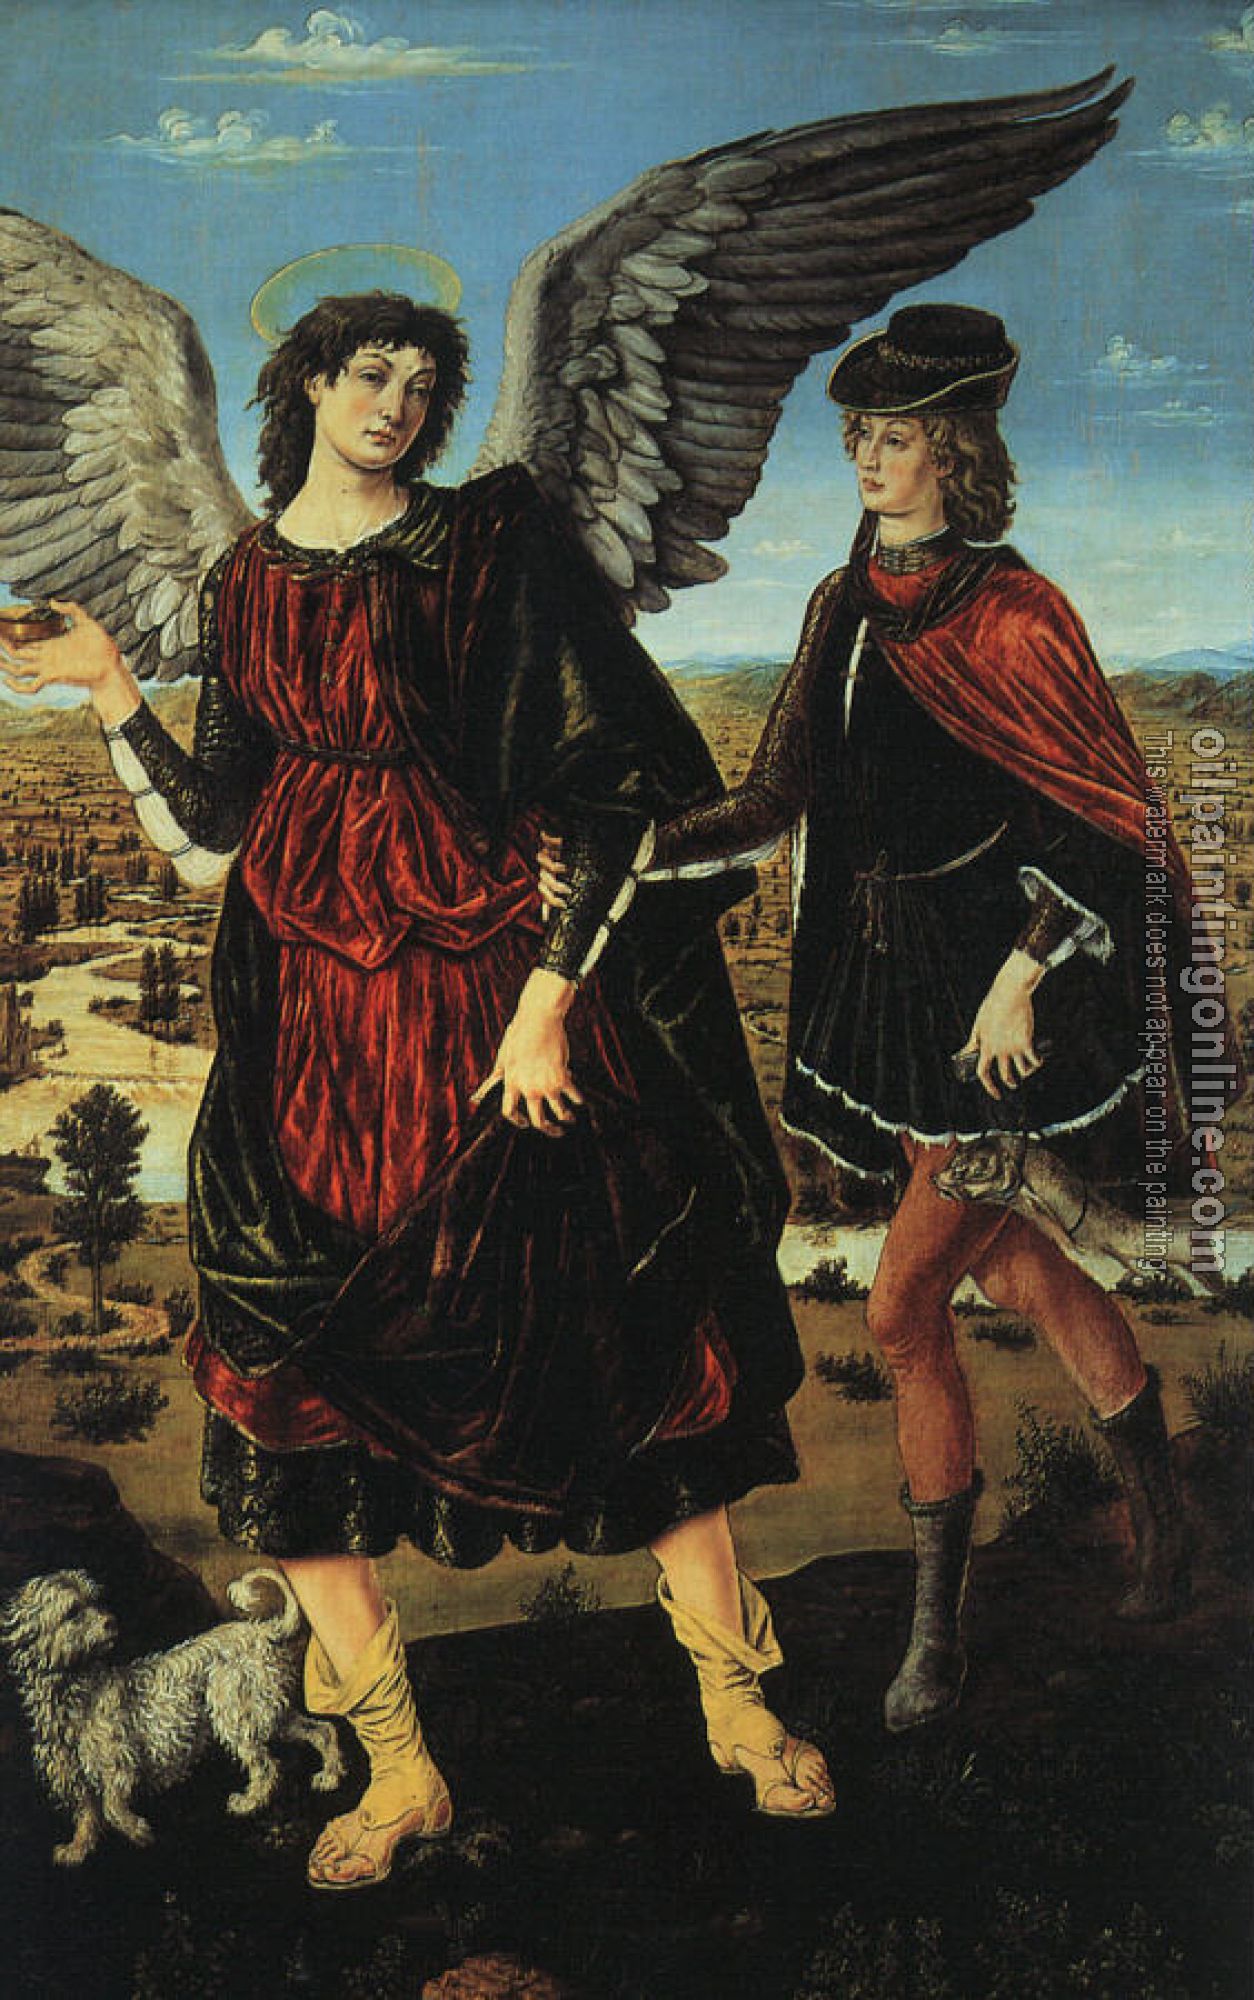 Pollaiolo, Antonio del - Tobias and the Angel